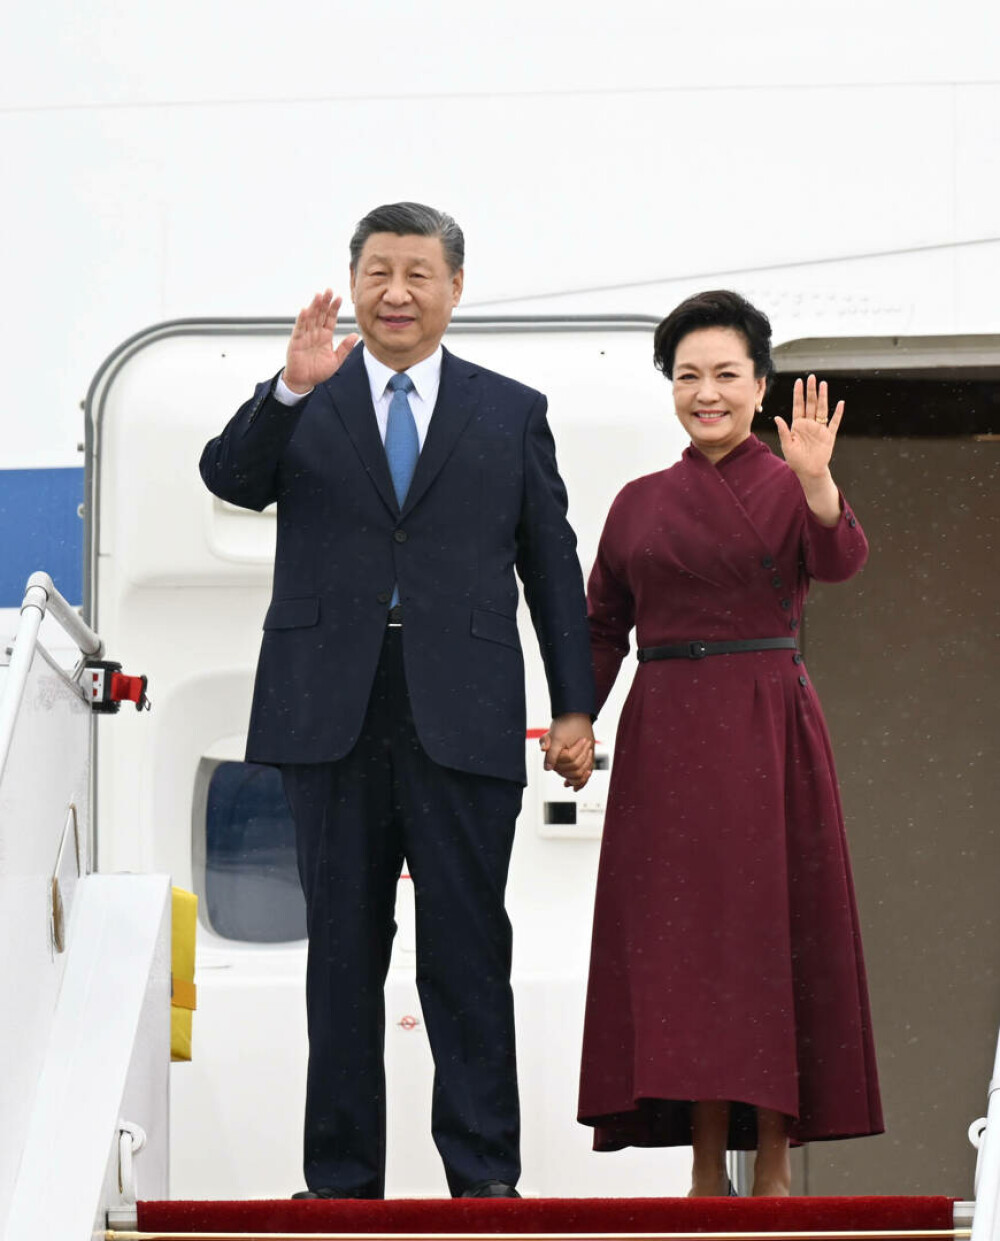 Xi Jinping a fost primit de Emmanuel Macron la Palatul Elysee. Mesajul președintelui Chinei pentru europeni - Imaginea 3